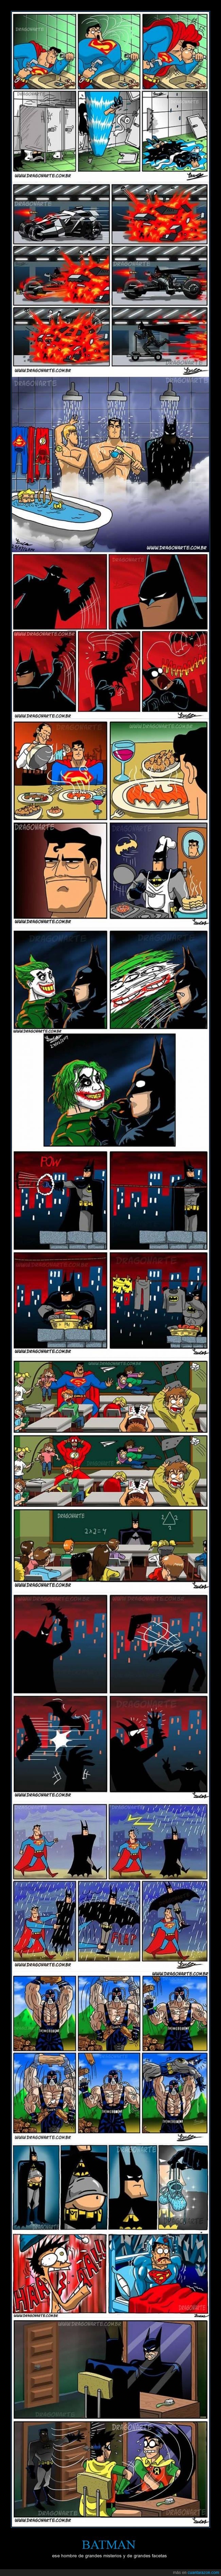 superman,robin,soy batman,batman,se que hay imagenes repetidas pero aun asi molan,heroes